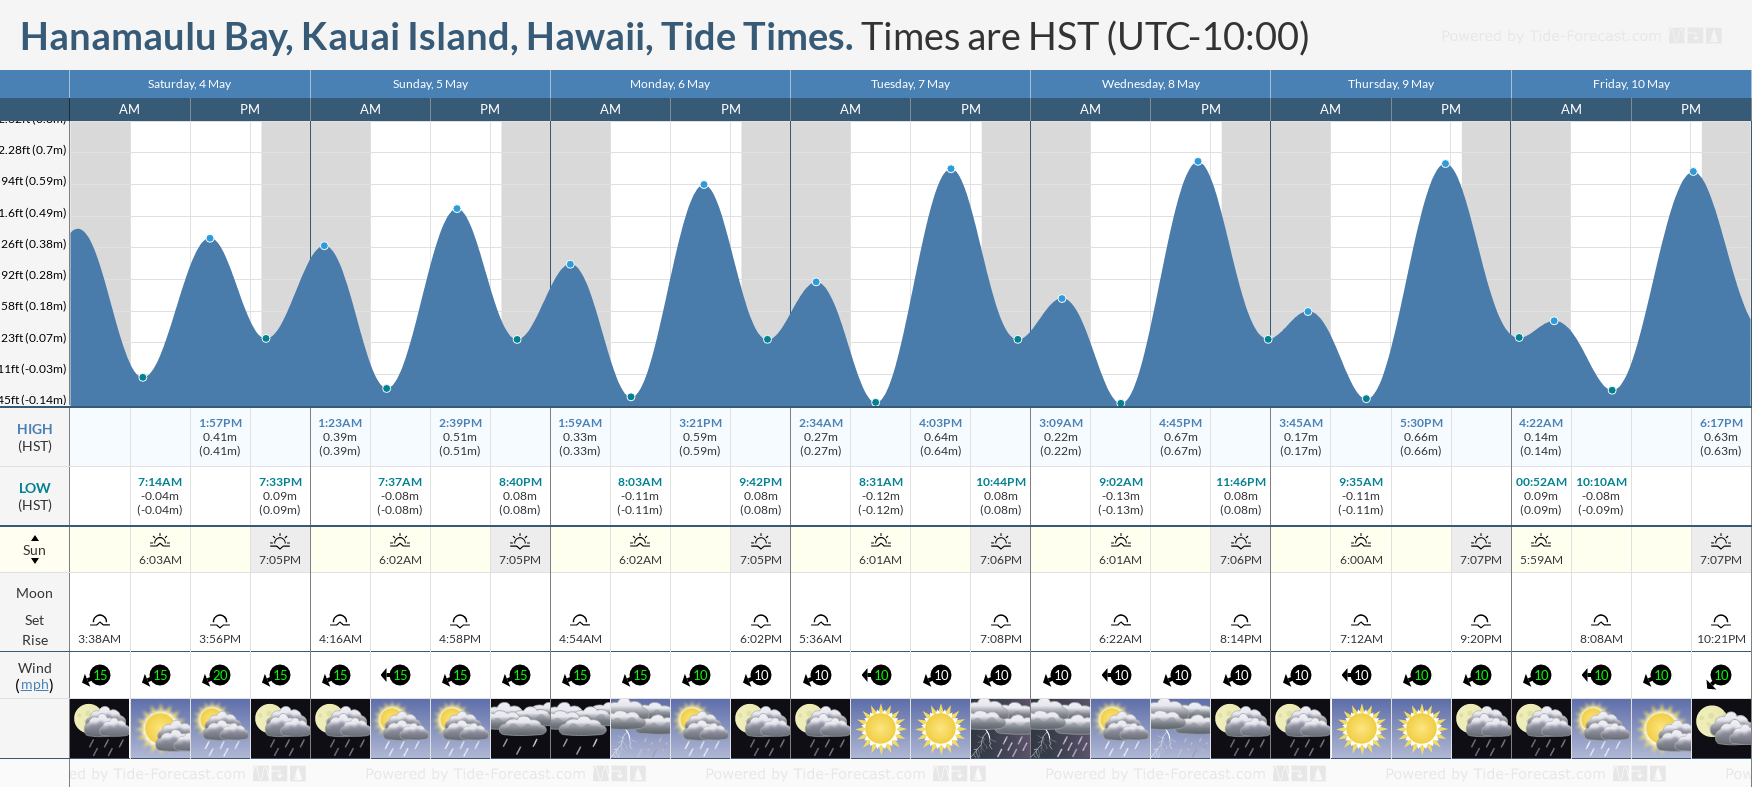 Hanamaulu Bay, Kauai Island, Hawaii Tide Chart including high and low tide times for the next 7 days